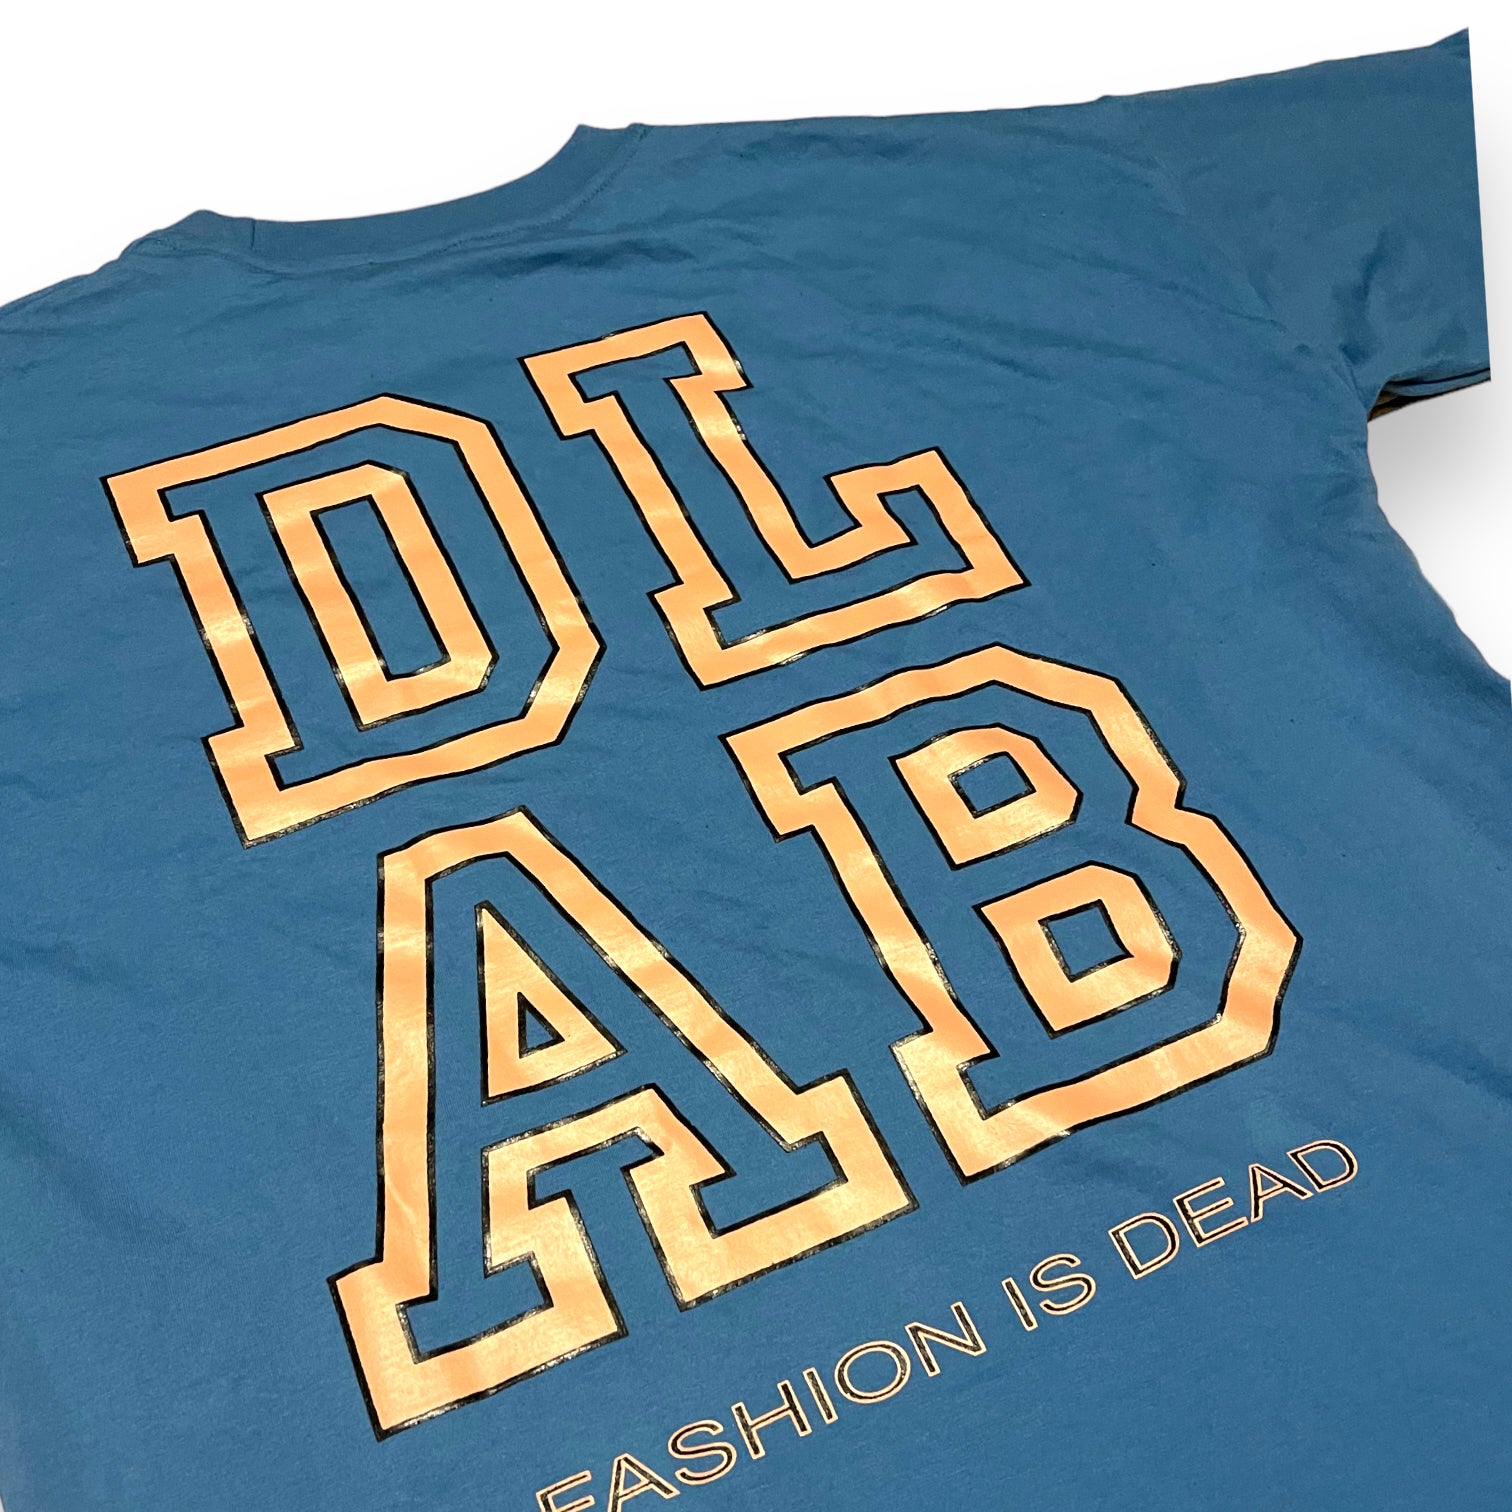 Dlab BASICS "Fashion is Dead" Tee (Blue)